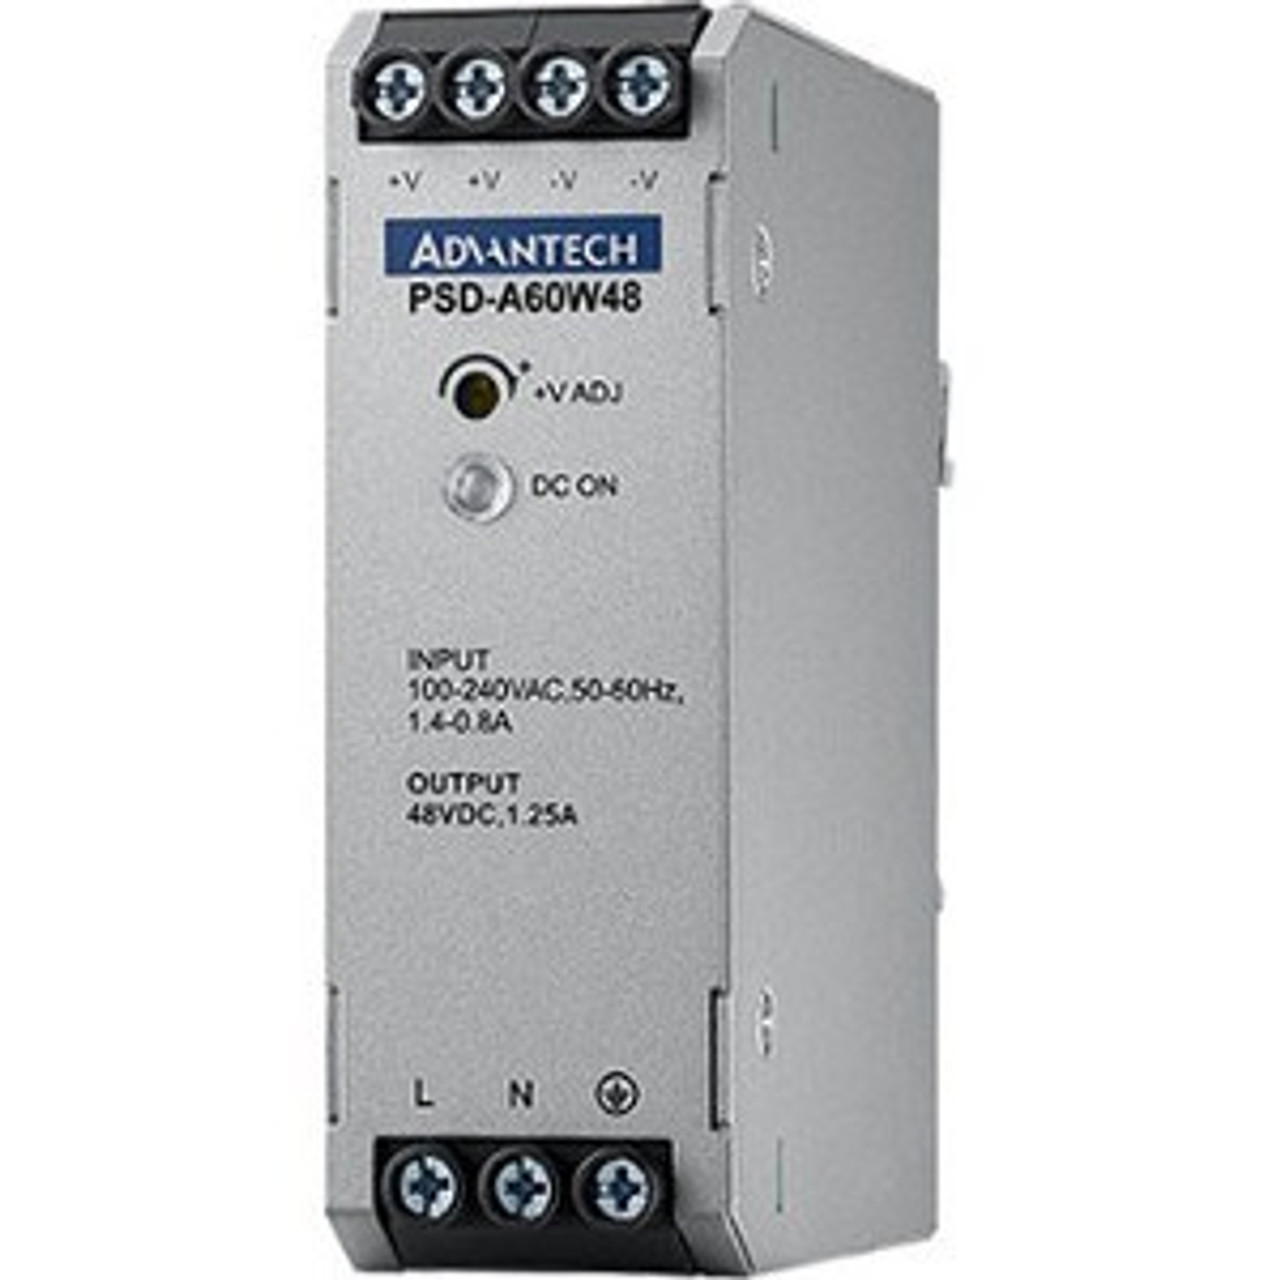 Advantech PSD-A60W48